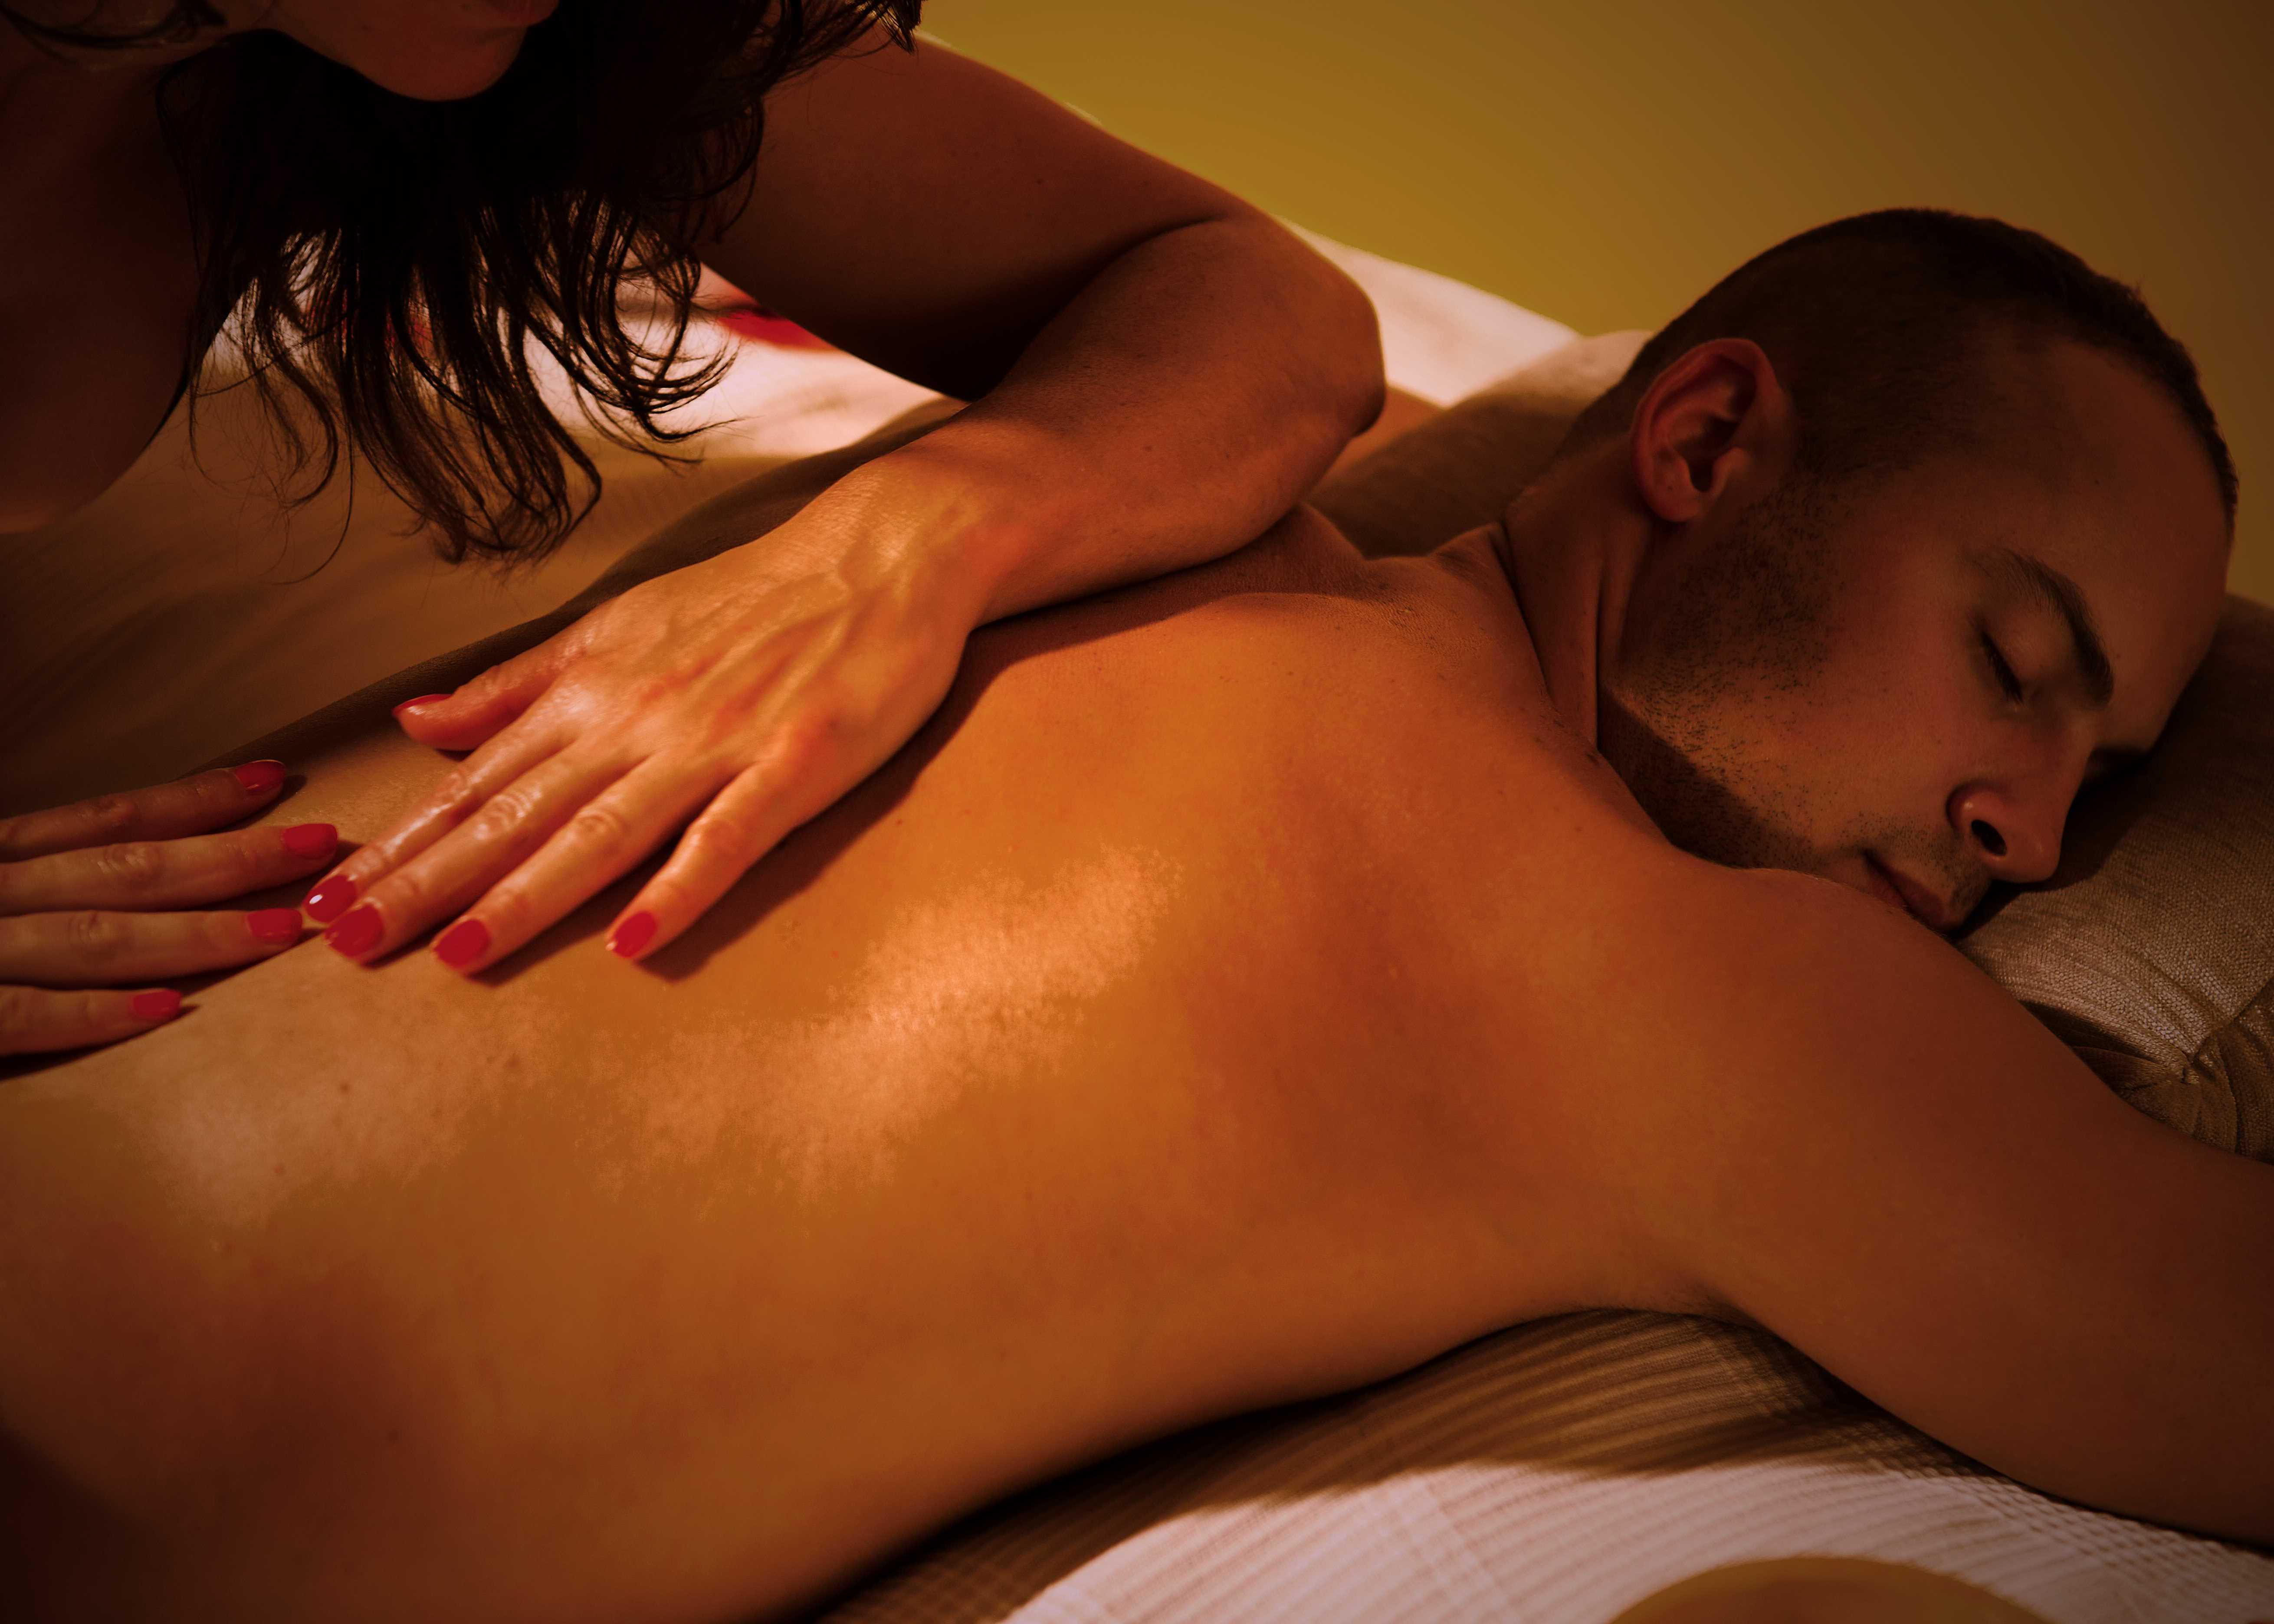 Escorts in massage | Chiclayo - Escort Europe Erotic massage Chiclayo